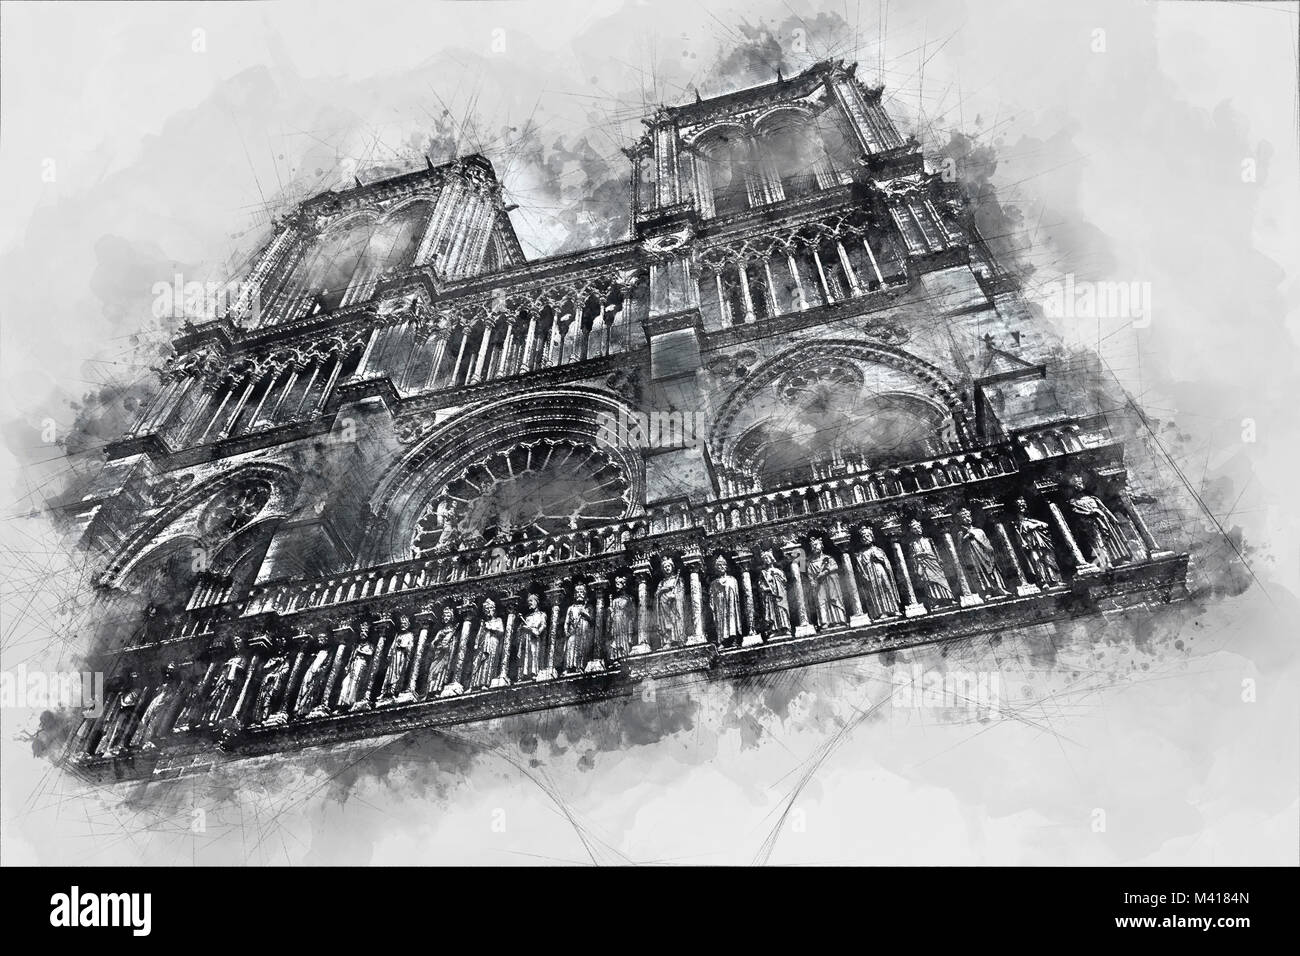 Peinture de Notre Dame, de l'historique cathédrale catholique, un des monuments les plus visités de Paris, France. Illustration sur gris backgroun Banque D'Images